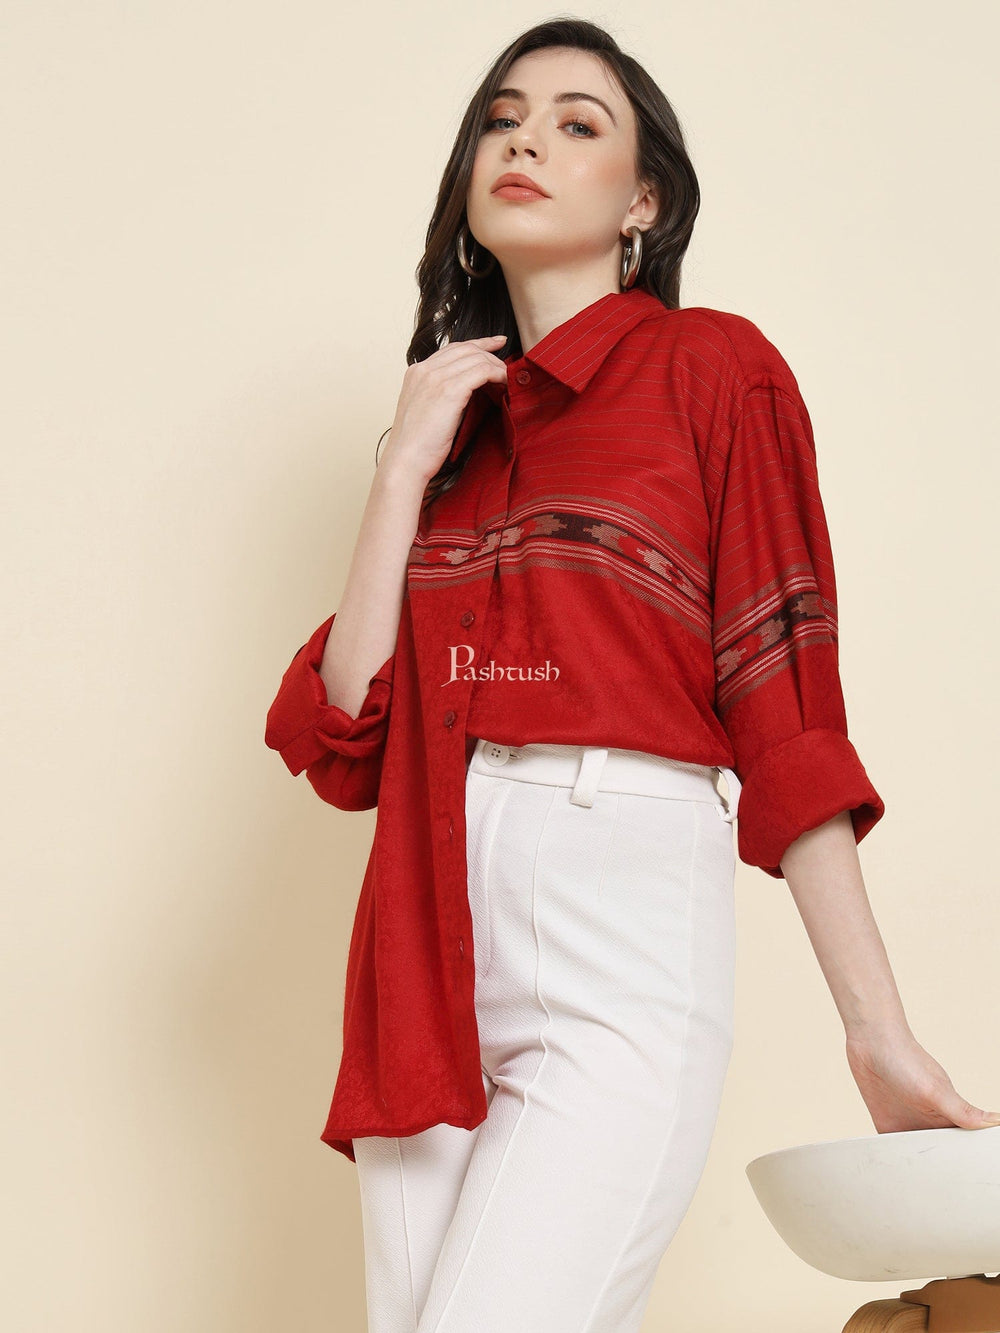 Pashtush India Womens Shirt Pashtush Womens Oversized Casual Woollen Shirt, Cherry Red